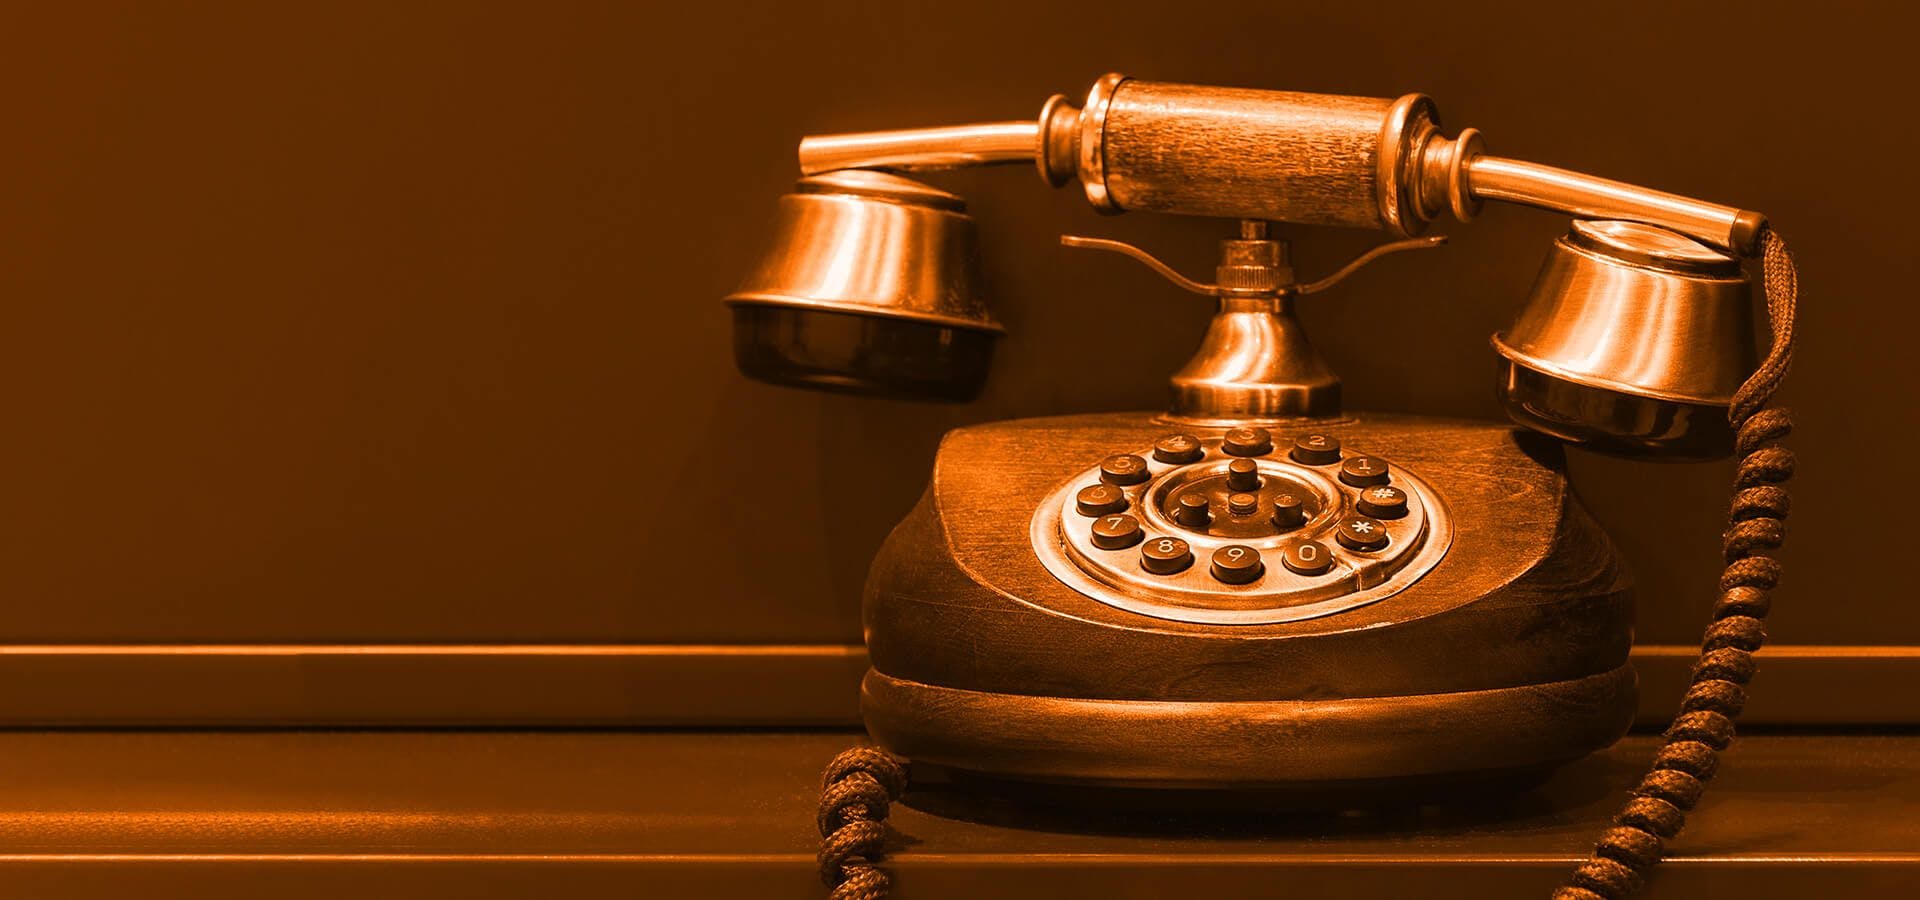 Teléfono antiguo sobre una mesa